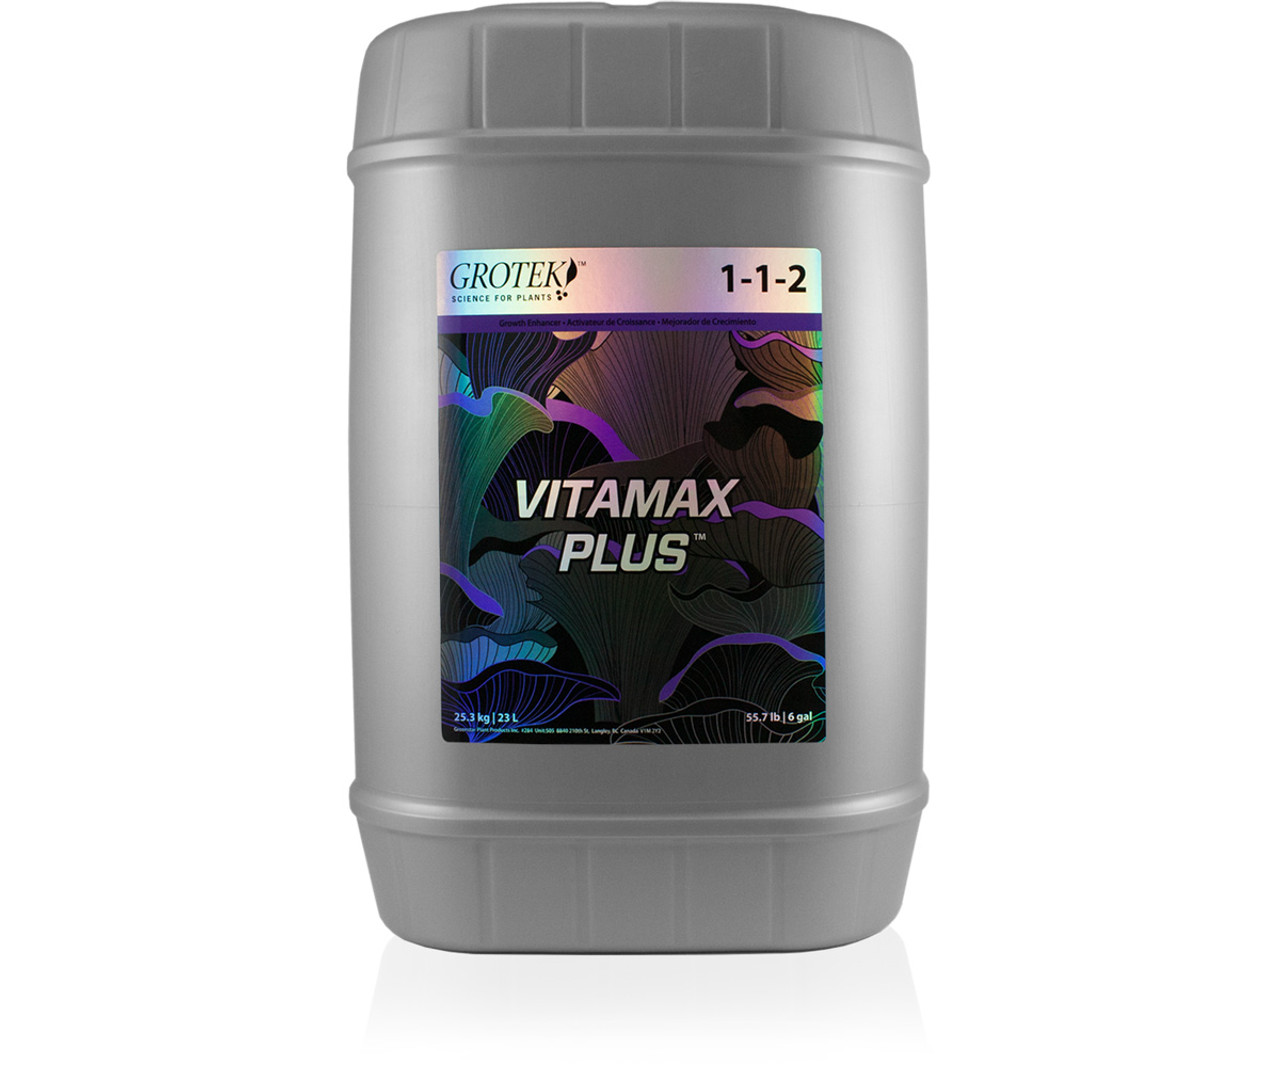 Grotek Vitamax Plus 23L 1-1-2